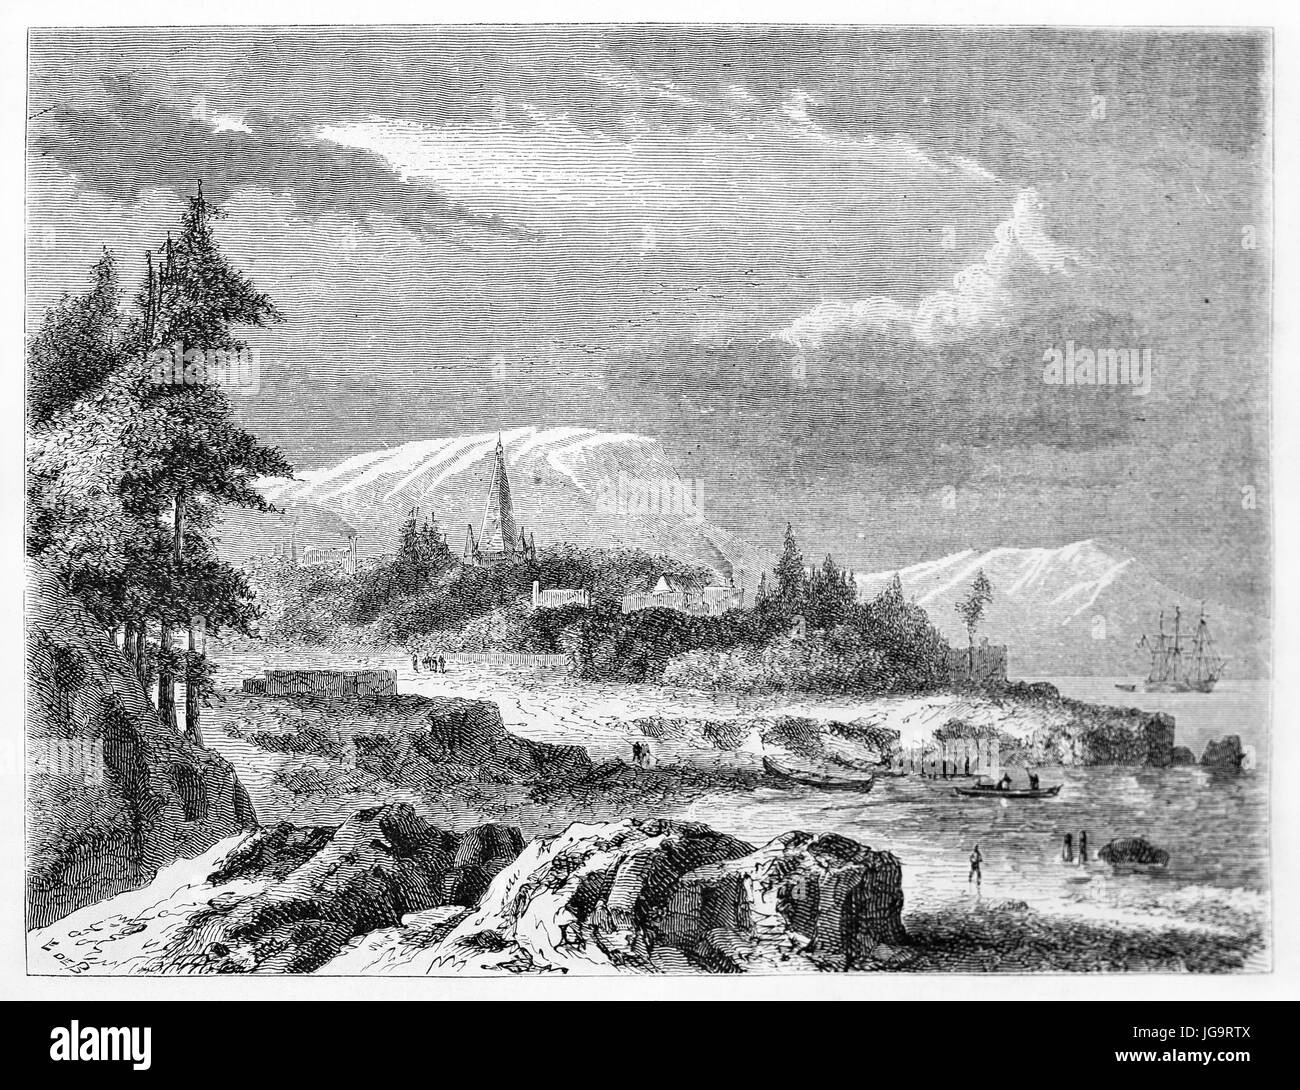 Petit avant-poste sur un paysage rocheux végétal à Punta Arenas, pays de feu, Chili. Art de style gravure de tons gris anciens par de Bérard, publié sur 1861 Banque D'Images